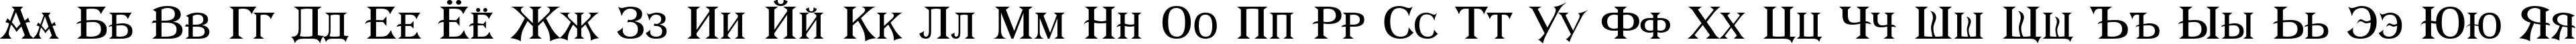 Пример написания русского алфавита шрифтом a_AlgeriusCaps